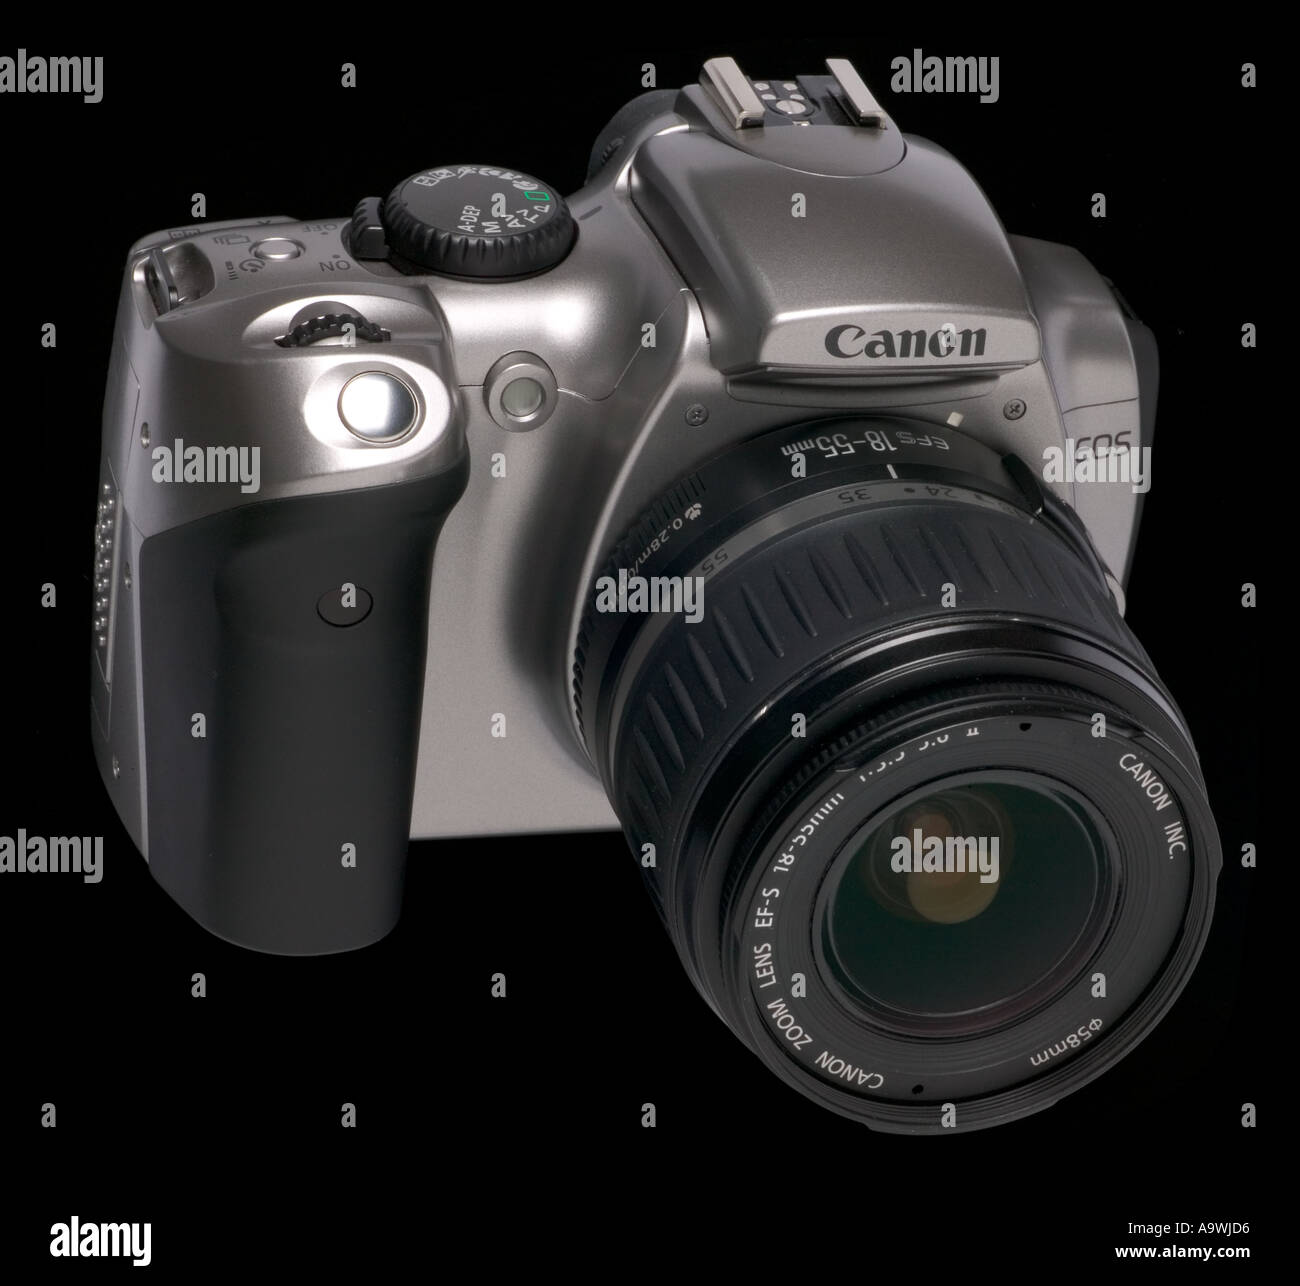 Canon 300D appareil photo reflex numérique 6mp six mégapixels Photo Stock -  Alamy